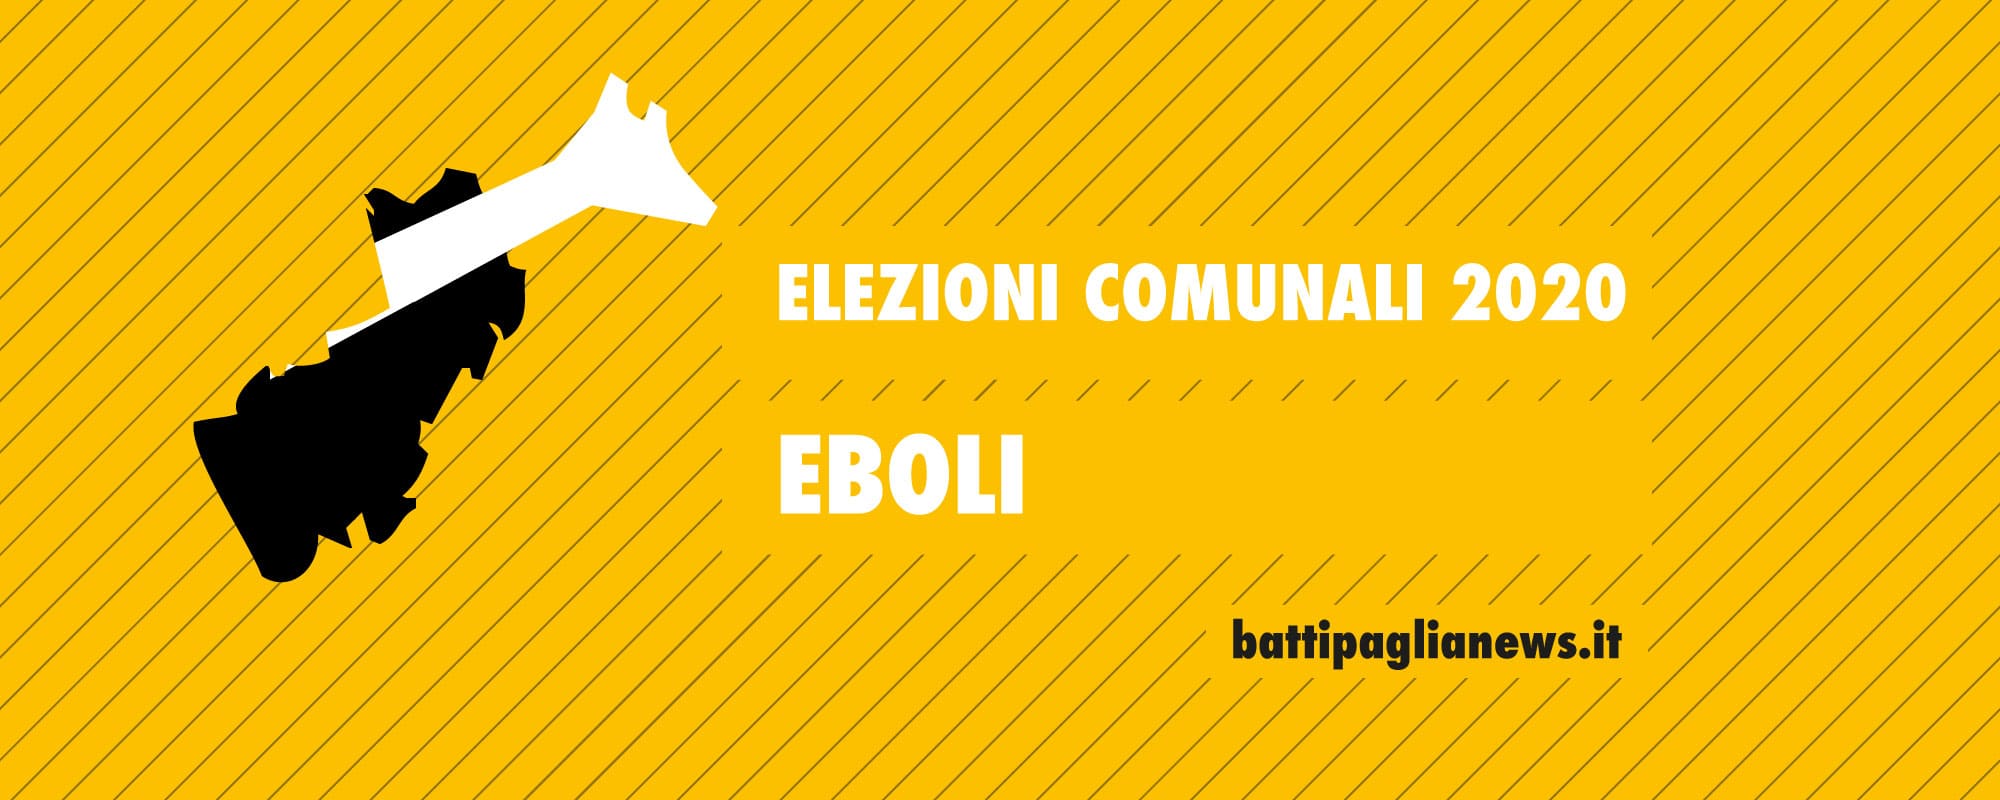 Elezioni comunali Eboli 2020